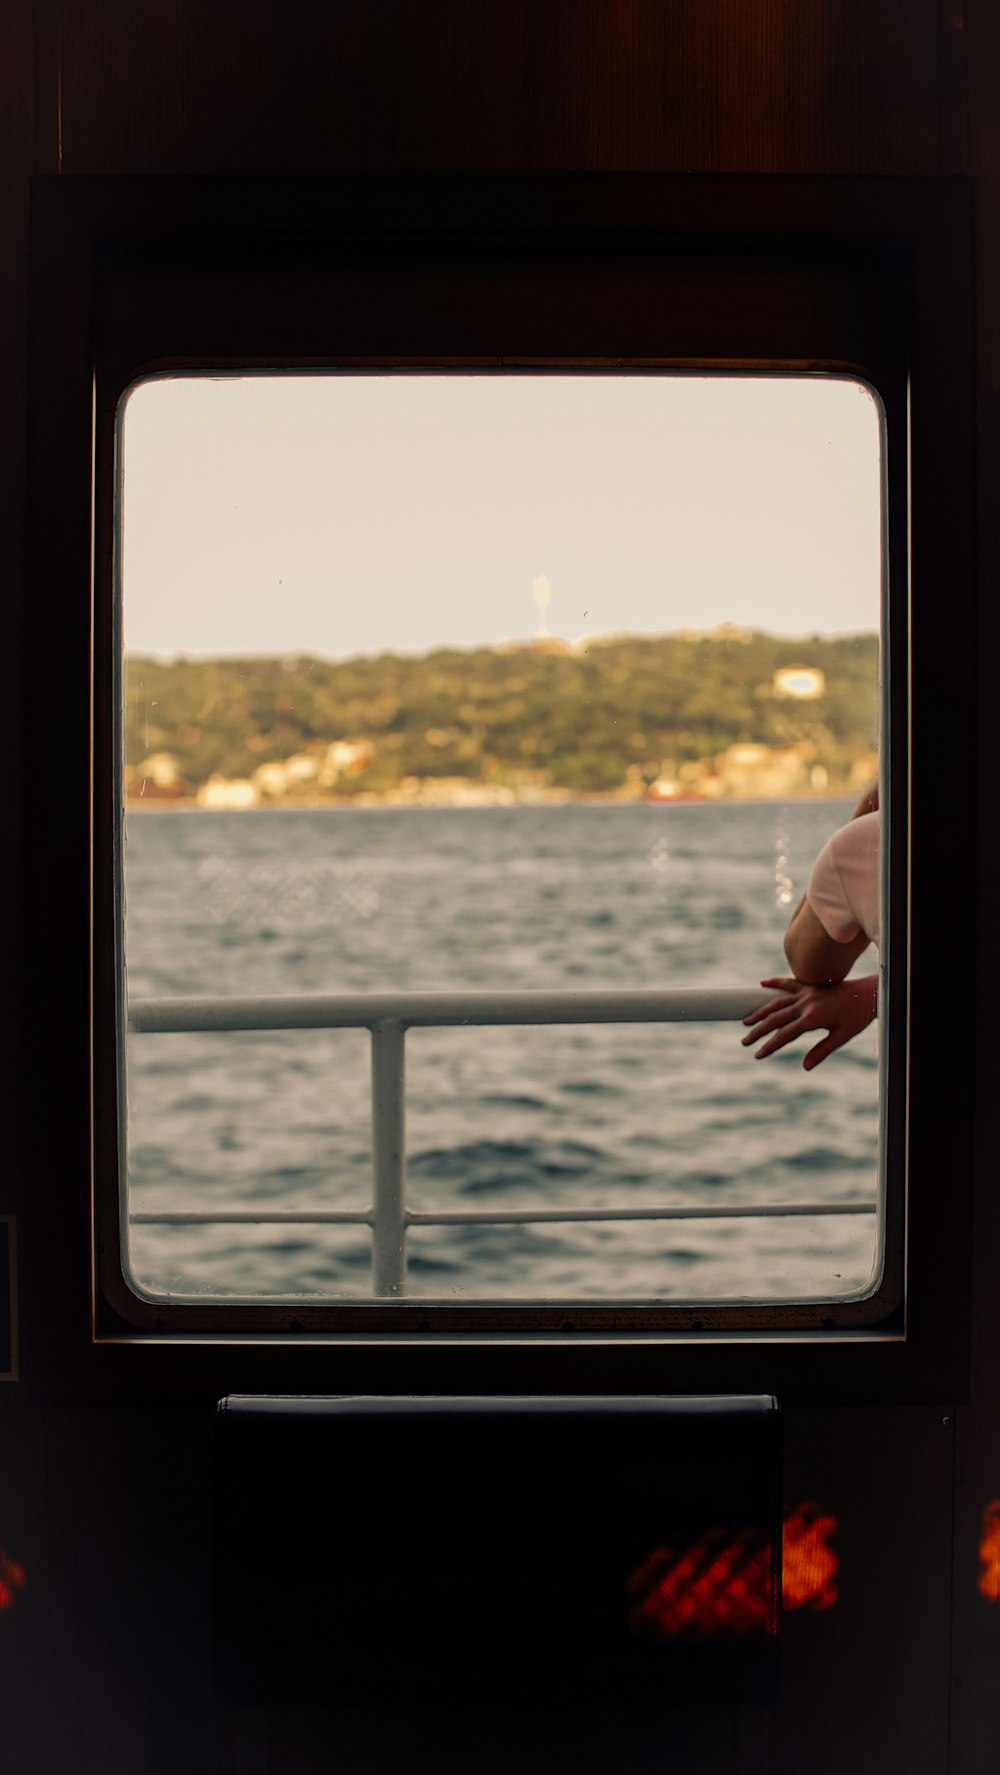 ボートの窓から人の手が見える